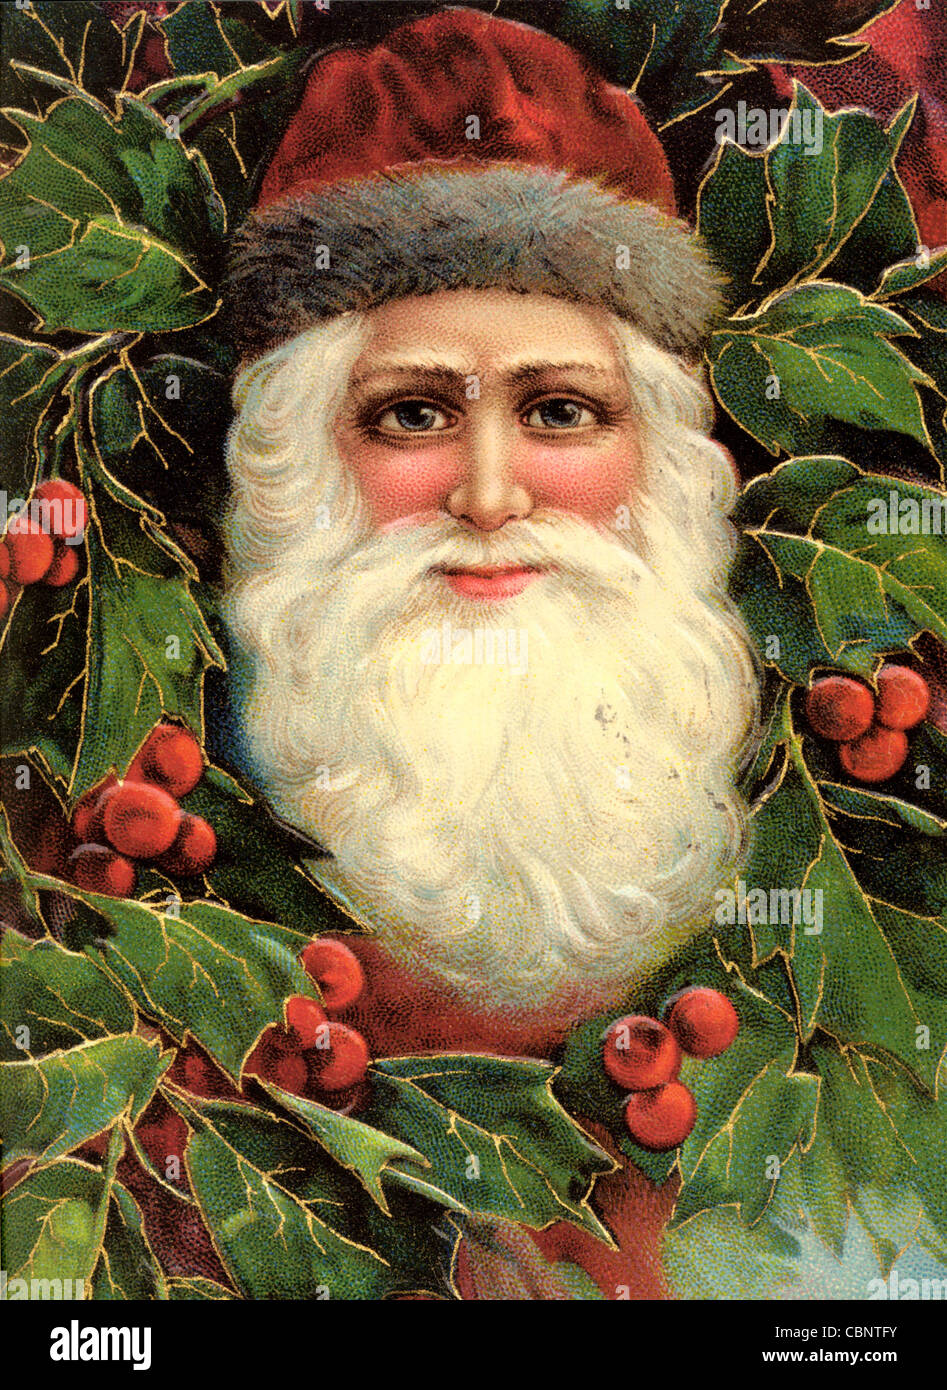 Santa Claus in Holly Tree Stock Photo